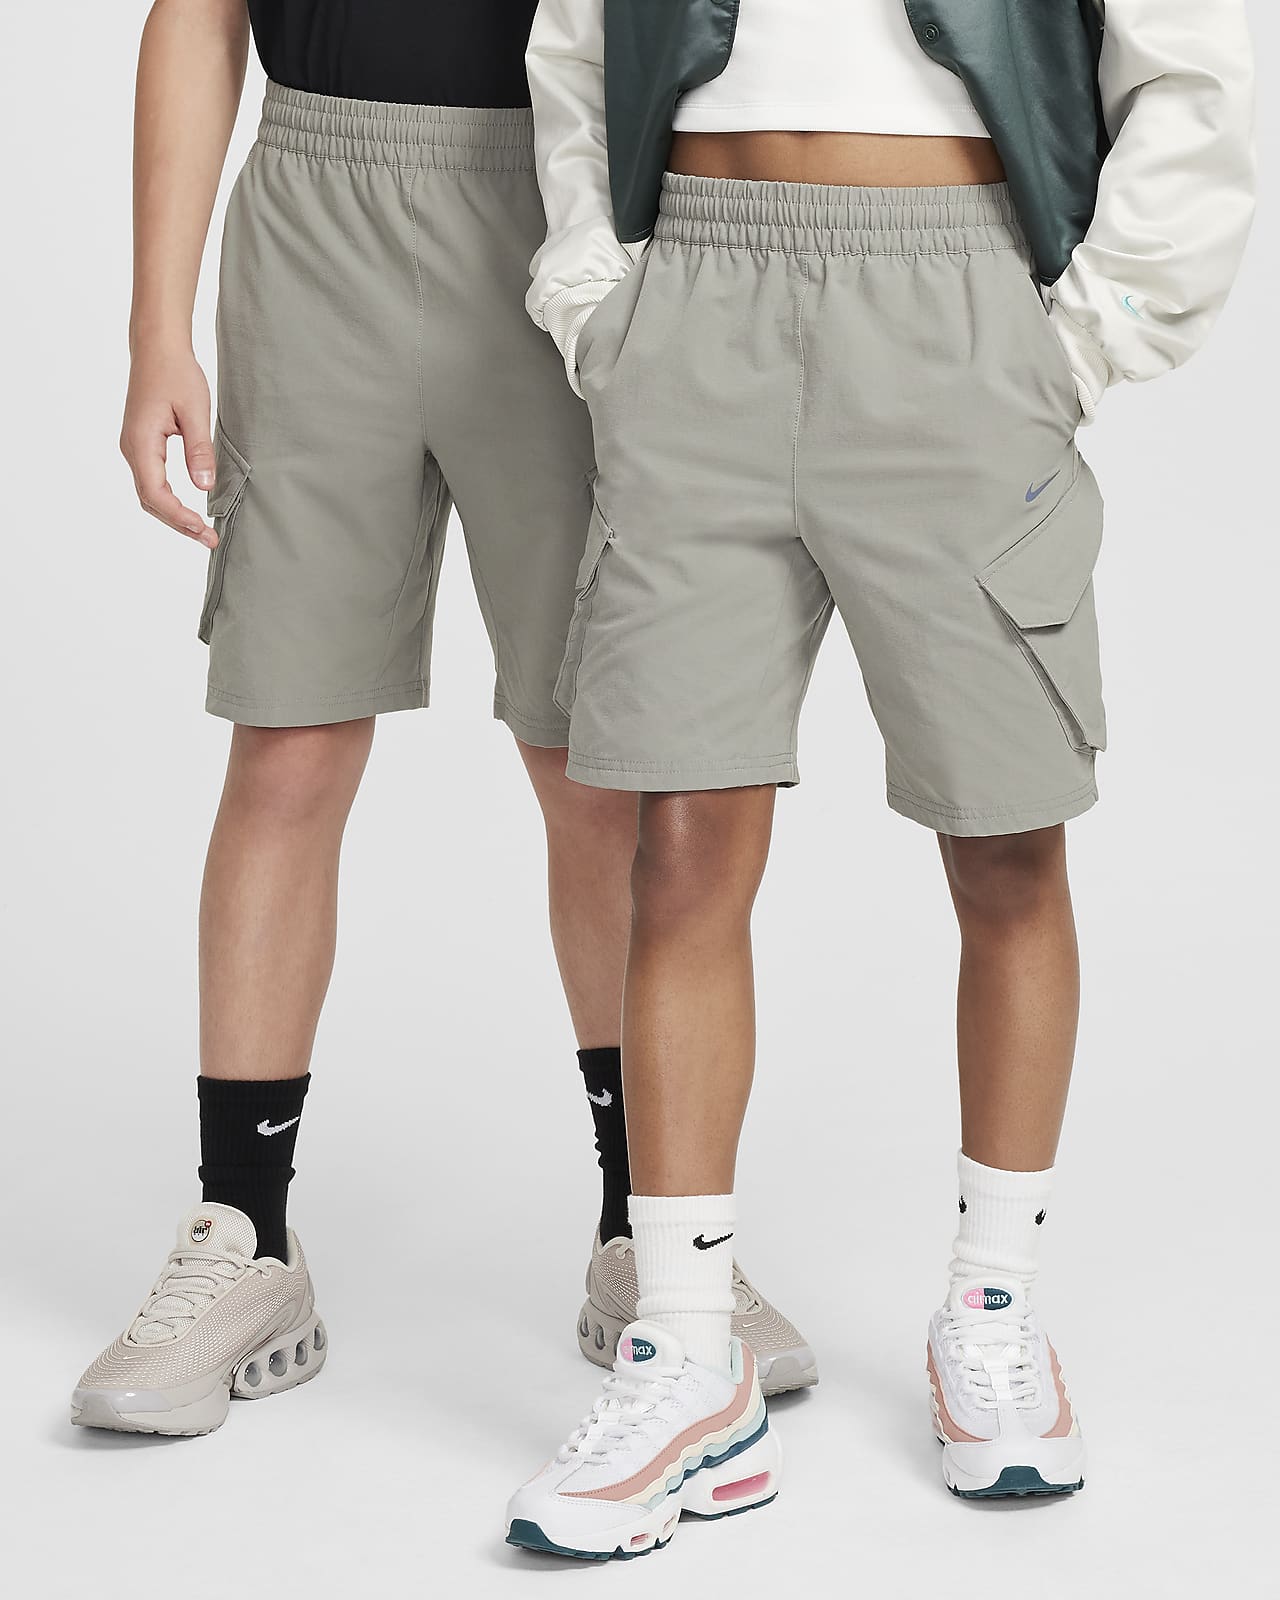 Nike Sportswear City Utility Big Kids' Cargo Shorts